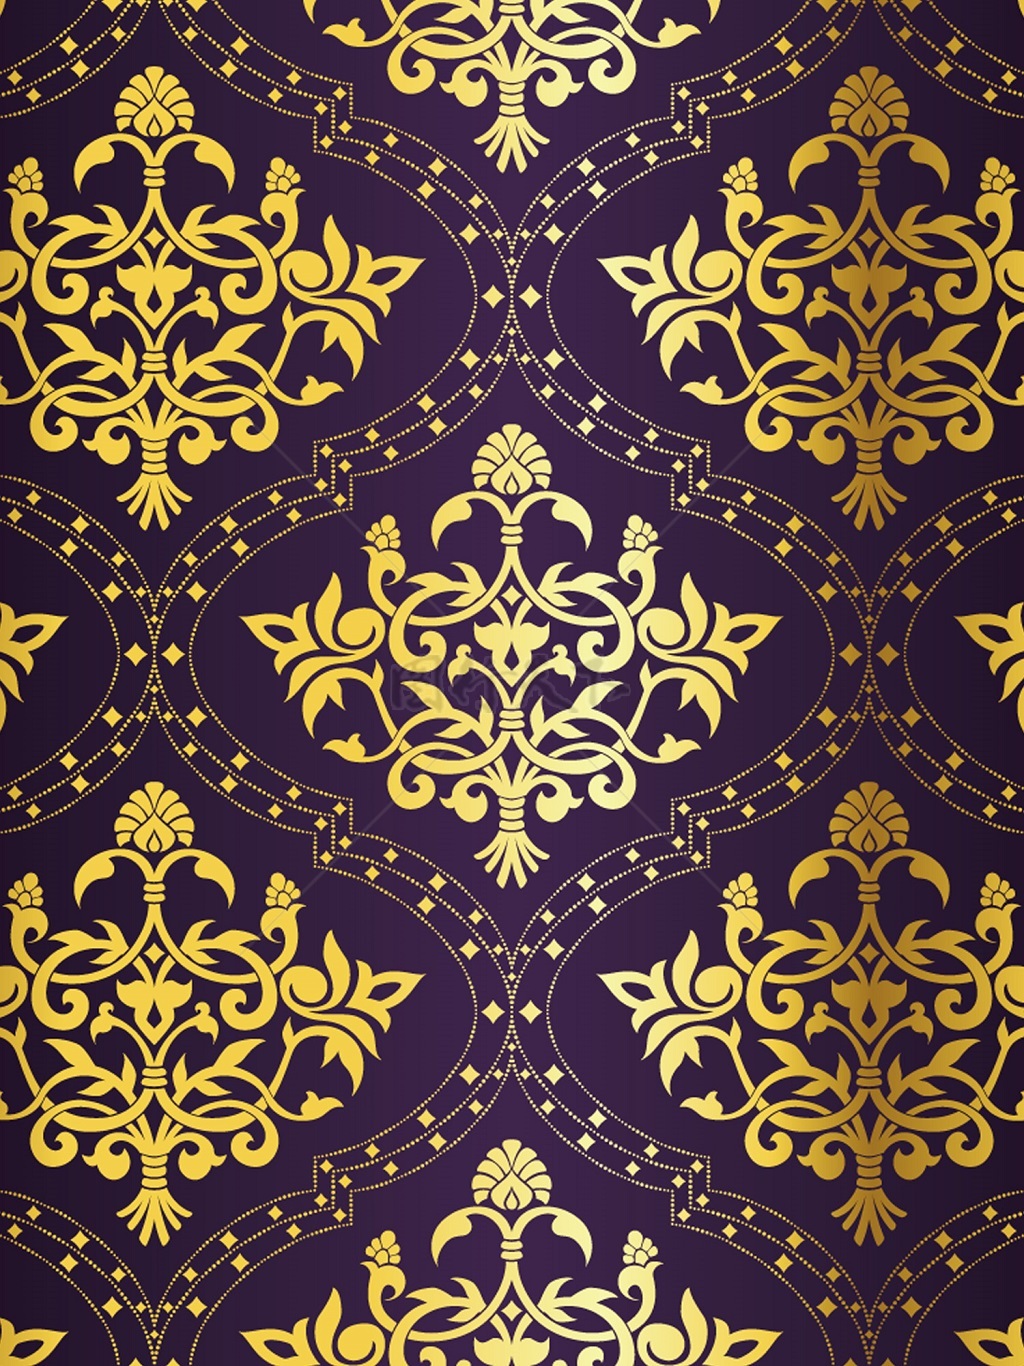 传统 欧式俄式花卉底图底纹  图案背景贴图  紫底金花菱格